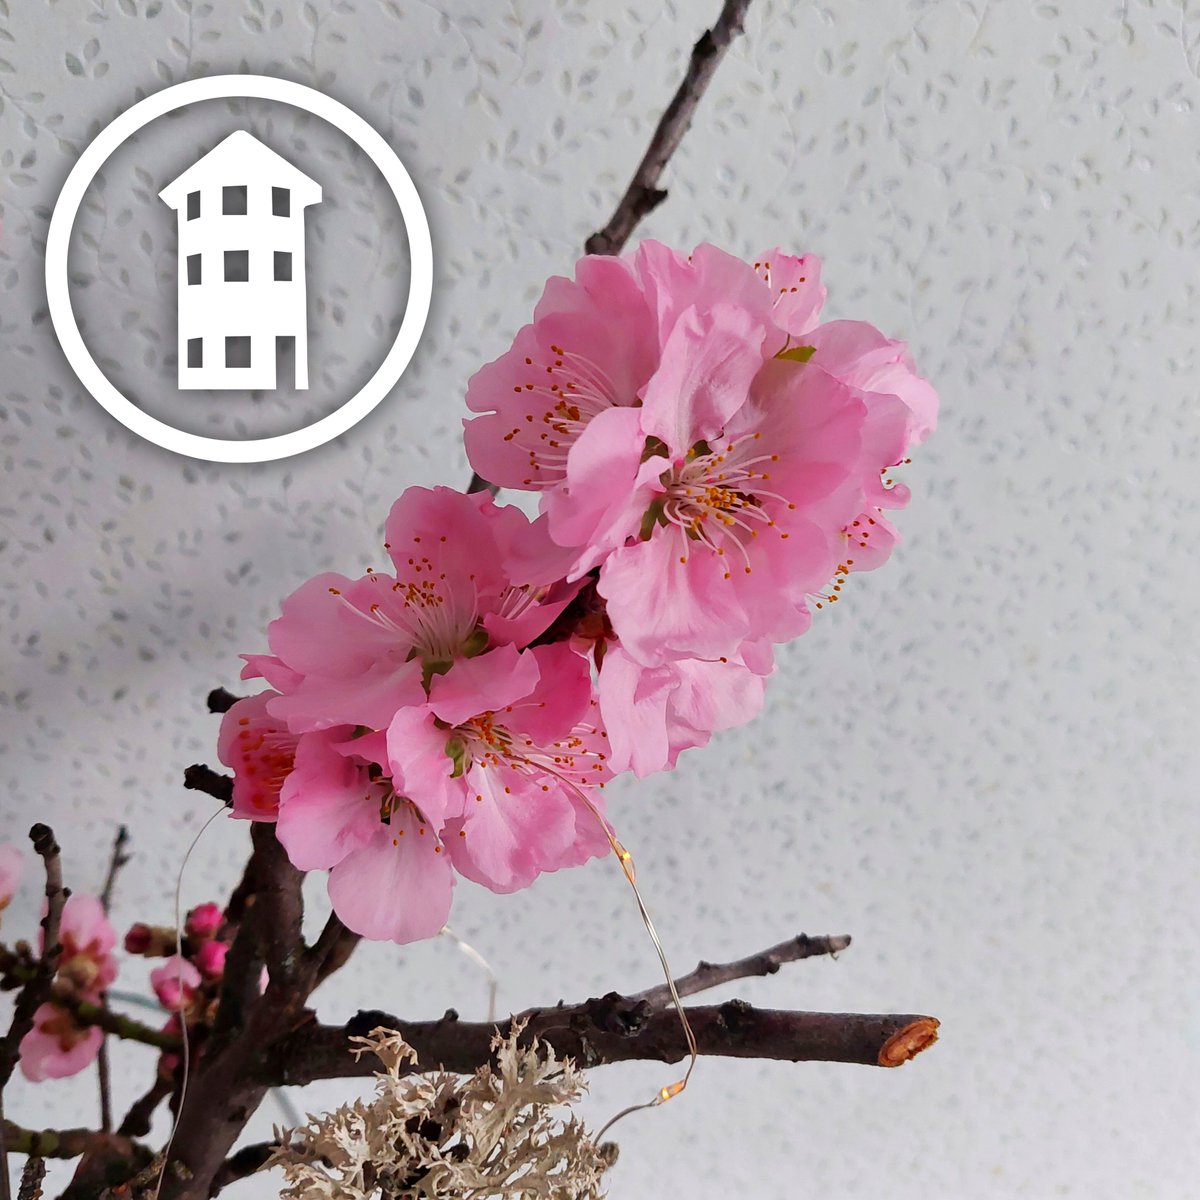 #Frühlingsgefühle in der #Küche!!! 🌸 Unsere #Mandelblütepflanze zeigt ihre ganze Pracht. 😍😊 #ViaEberle #Vinothek #Pension #Gästezimmer #Grünstadt #RheinlandPfalz #Pfalz #Deutschland #Germany #Mandel #Mandelblüte #Mandelblüten #Mandelblume #Mandelblumen #Frühling #Spring